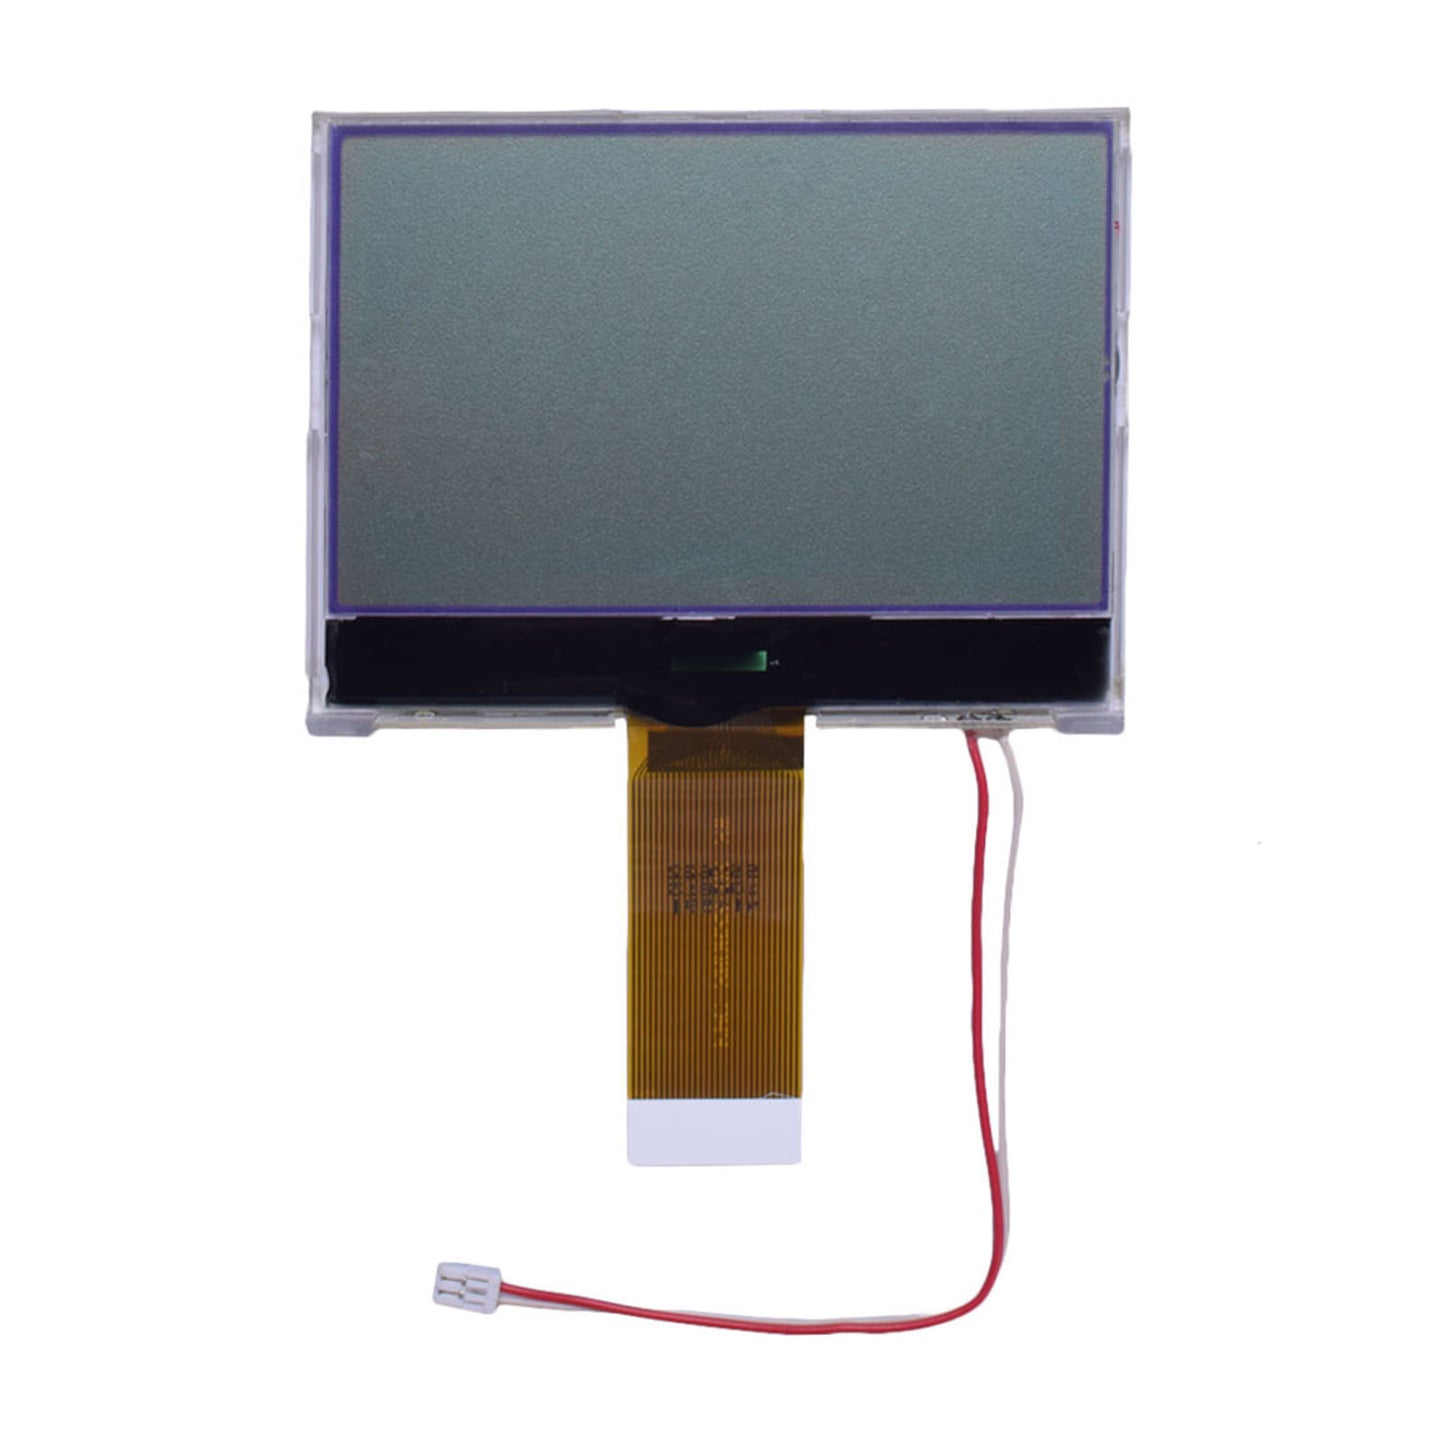 DisplayModule 3" 128x64 COG Gray Graphic LCD - MCU